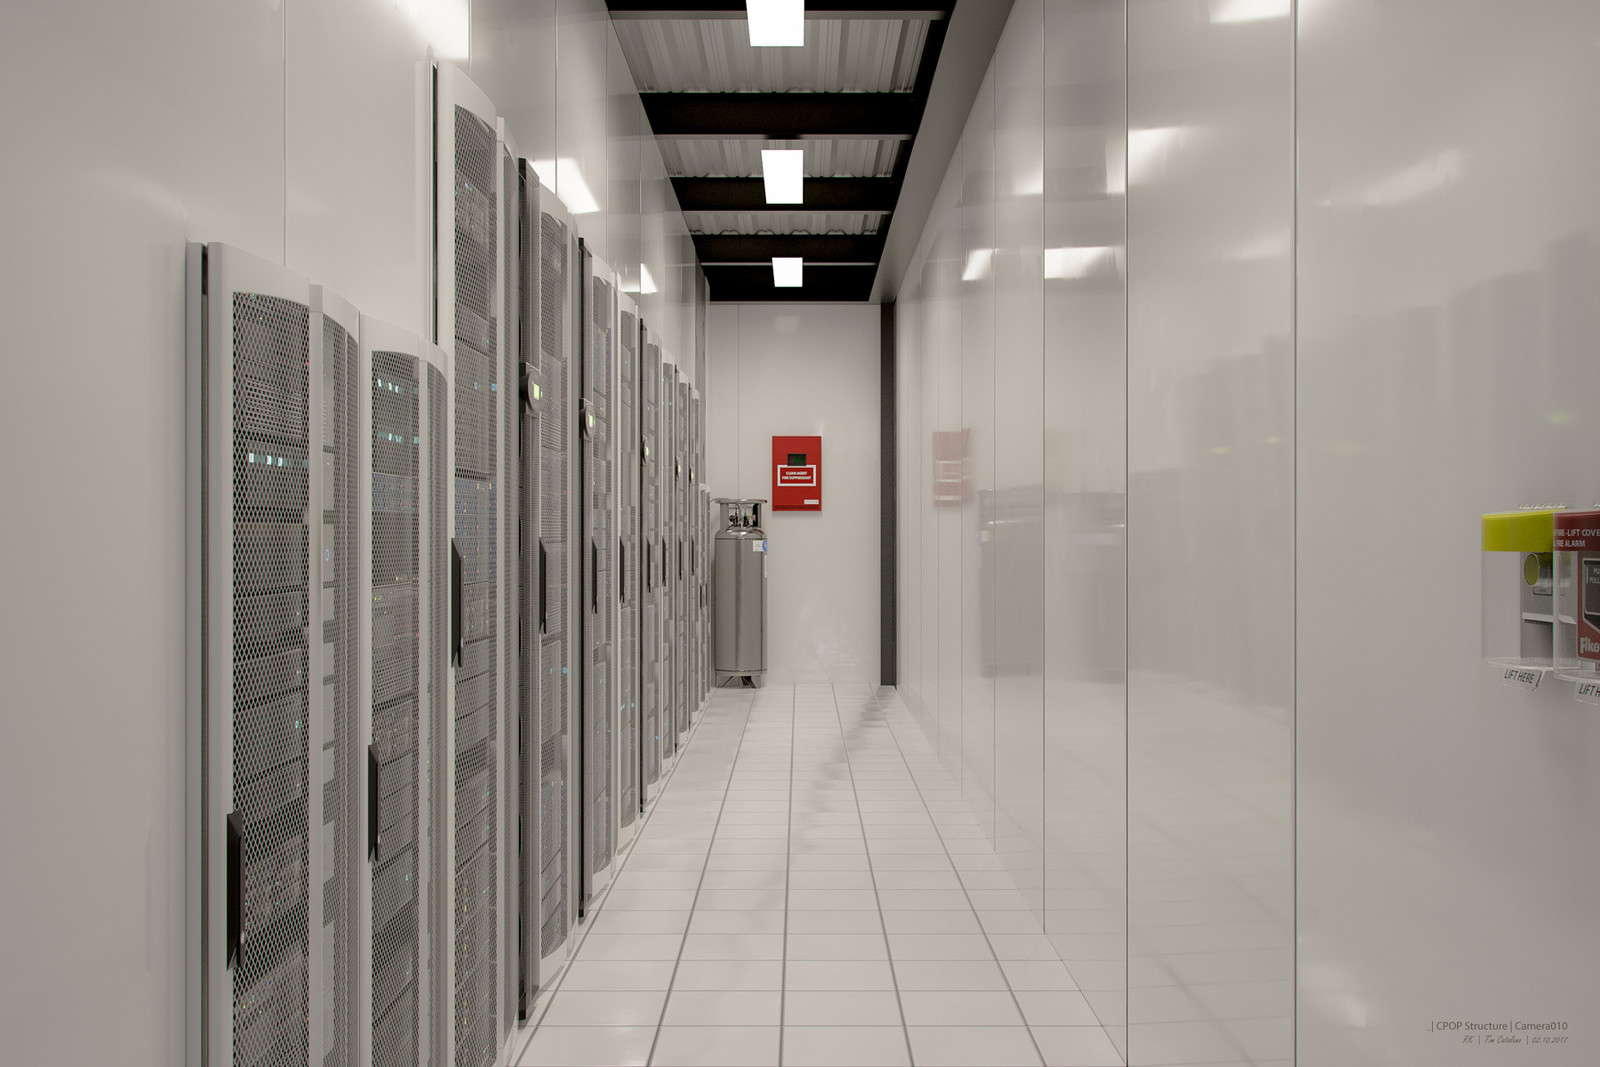 Modular data center interior